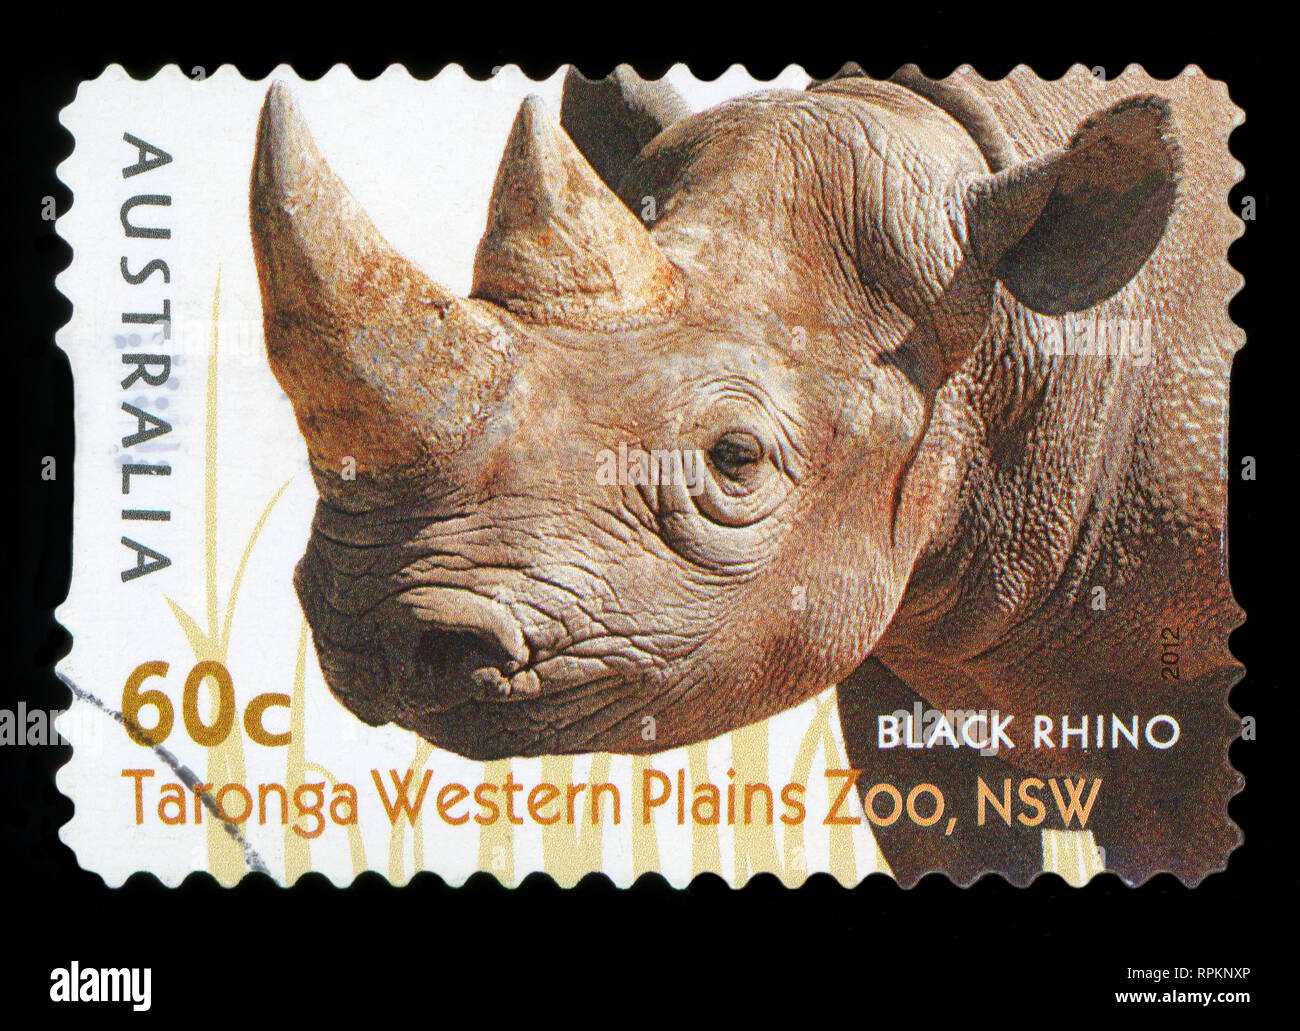 AUSTRALIA - circa 2012: un timbro stampato in Australia mostra il rinoceronte nero dal Taronga Western Plains Zoo,NSW, serie, circa 2012. Foto Stock